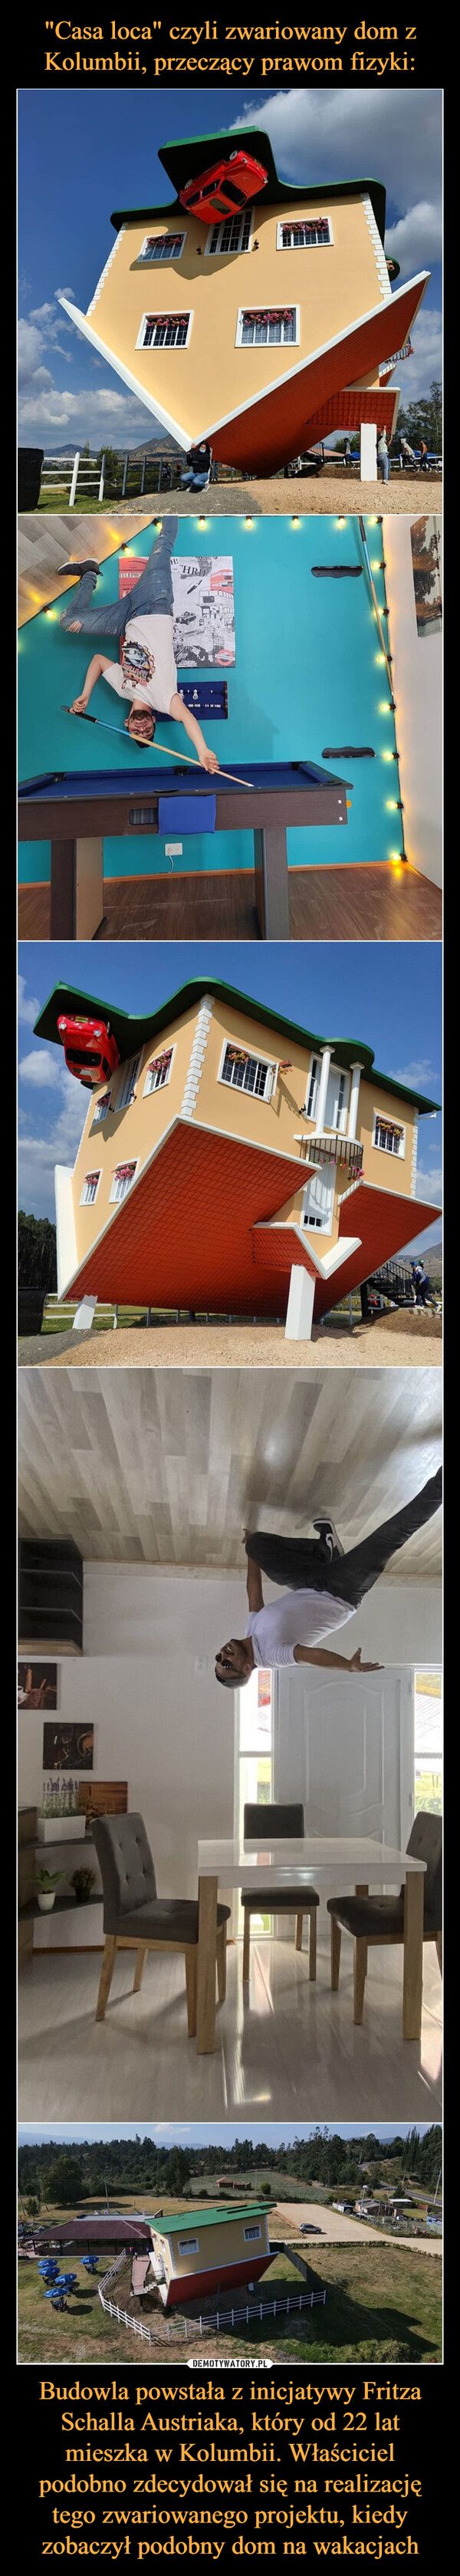 "Casa loca" czyli zwariowany dom z Kolumbii, przeczący prawom fizyki: Budowla powstała z inicjatywy Fritza Schalla Austriaka, który od 22 lat mieszka w Kolumbii. Właściciel podobno zdecydował się na realizację tego zwariowanego projektu, kiedy zobaczył podobny dom na wakacjach